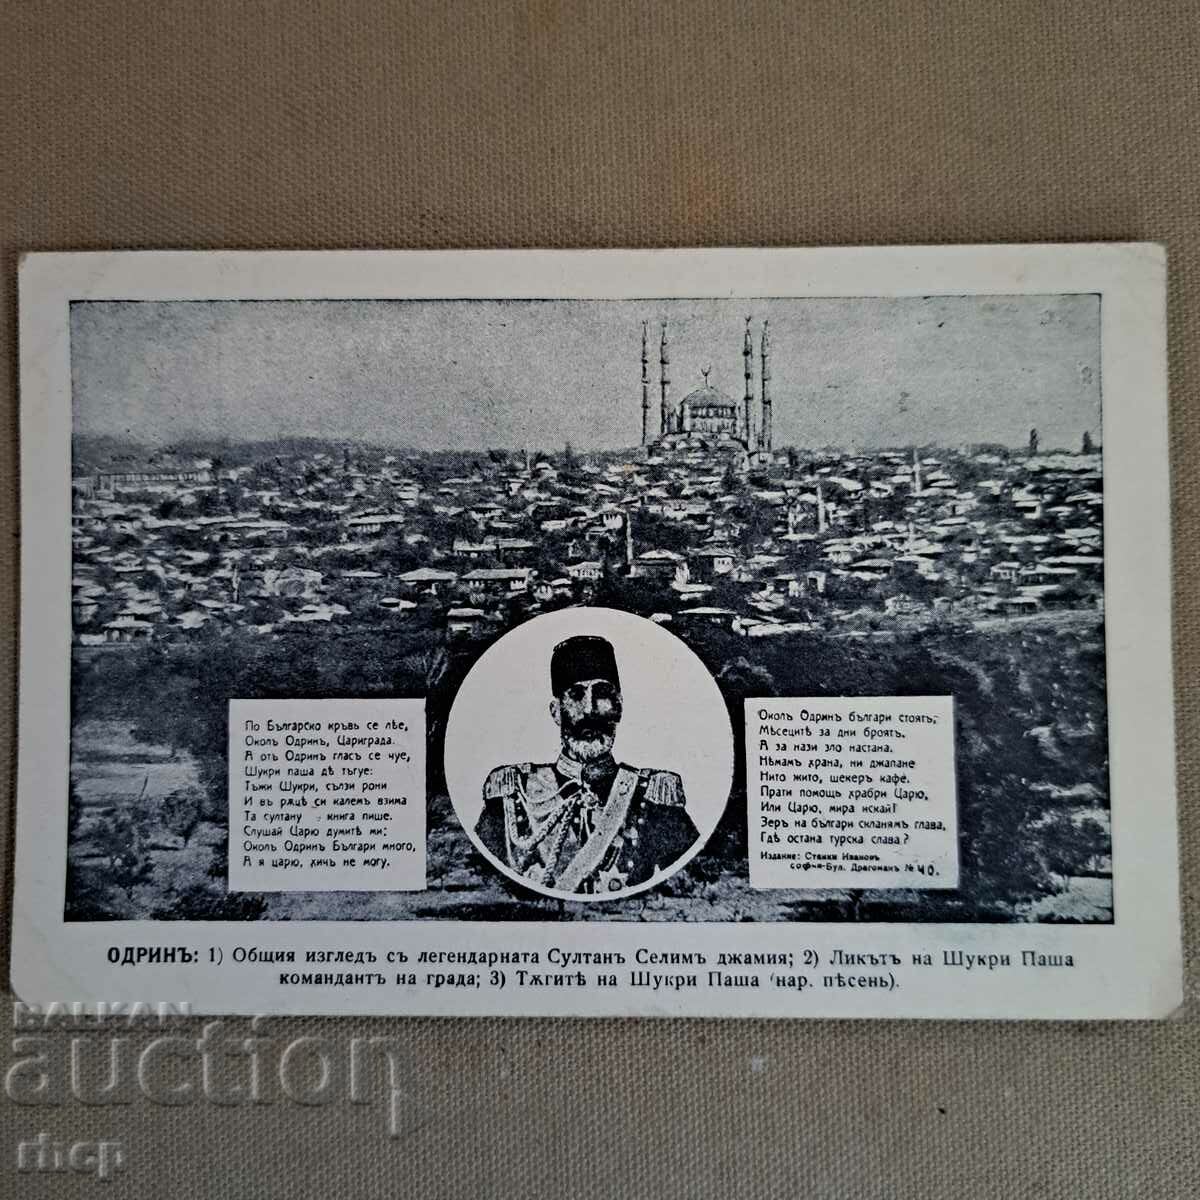 Ordin Shukri Pasha 1913 postcard Balkan War